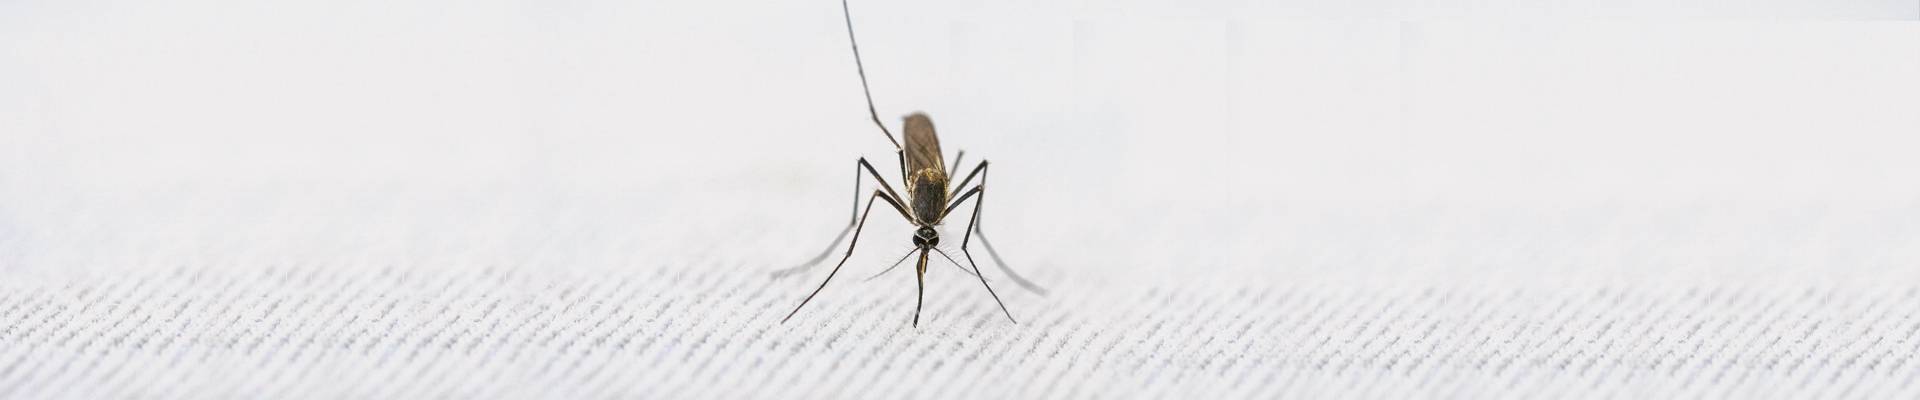 Mosquito extermination